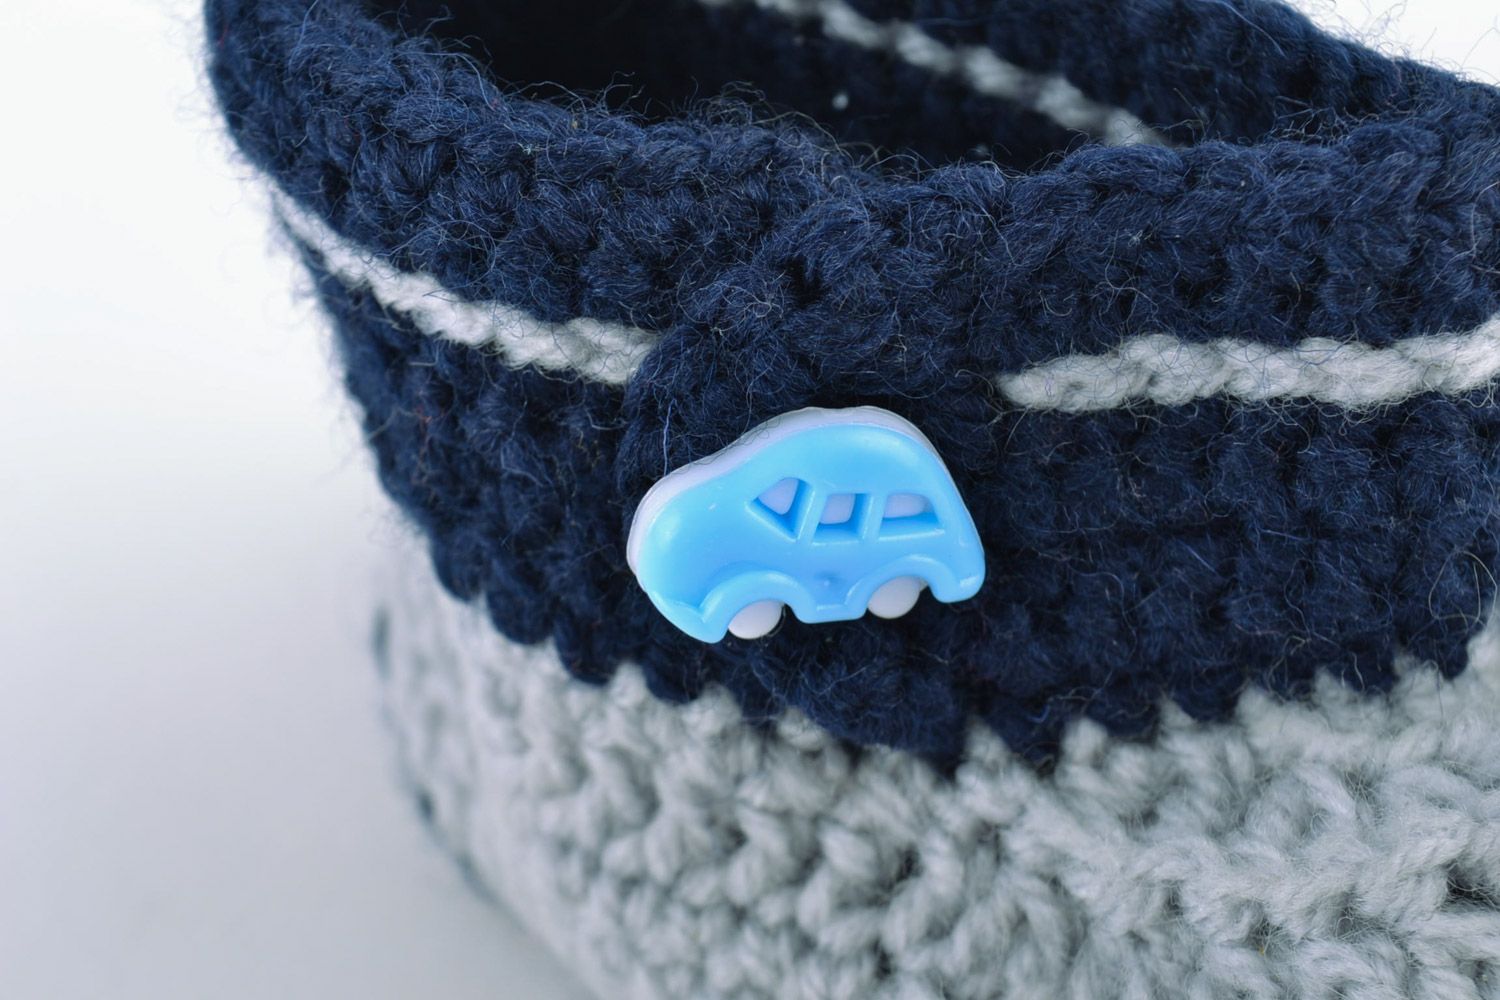 Petucos de bebé con forma de zapatitos artesanales de lana grises azules foto 3